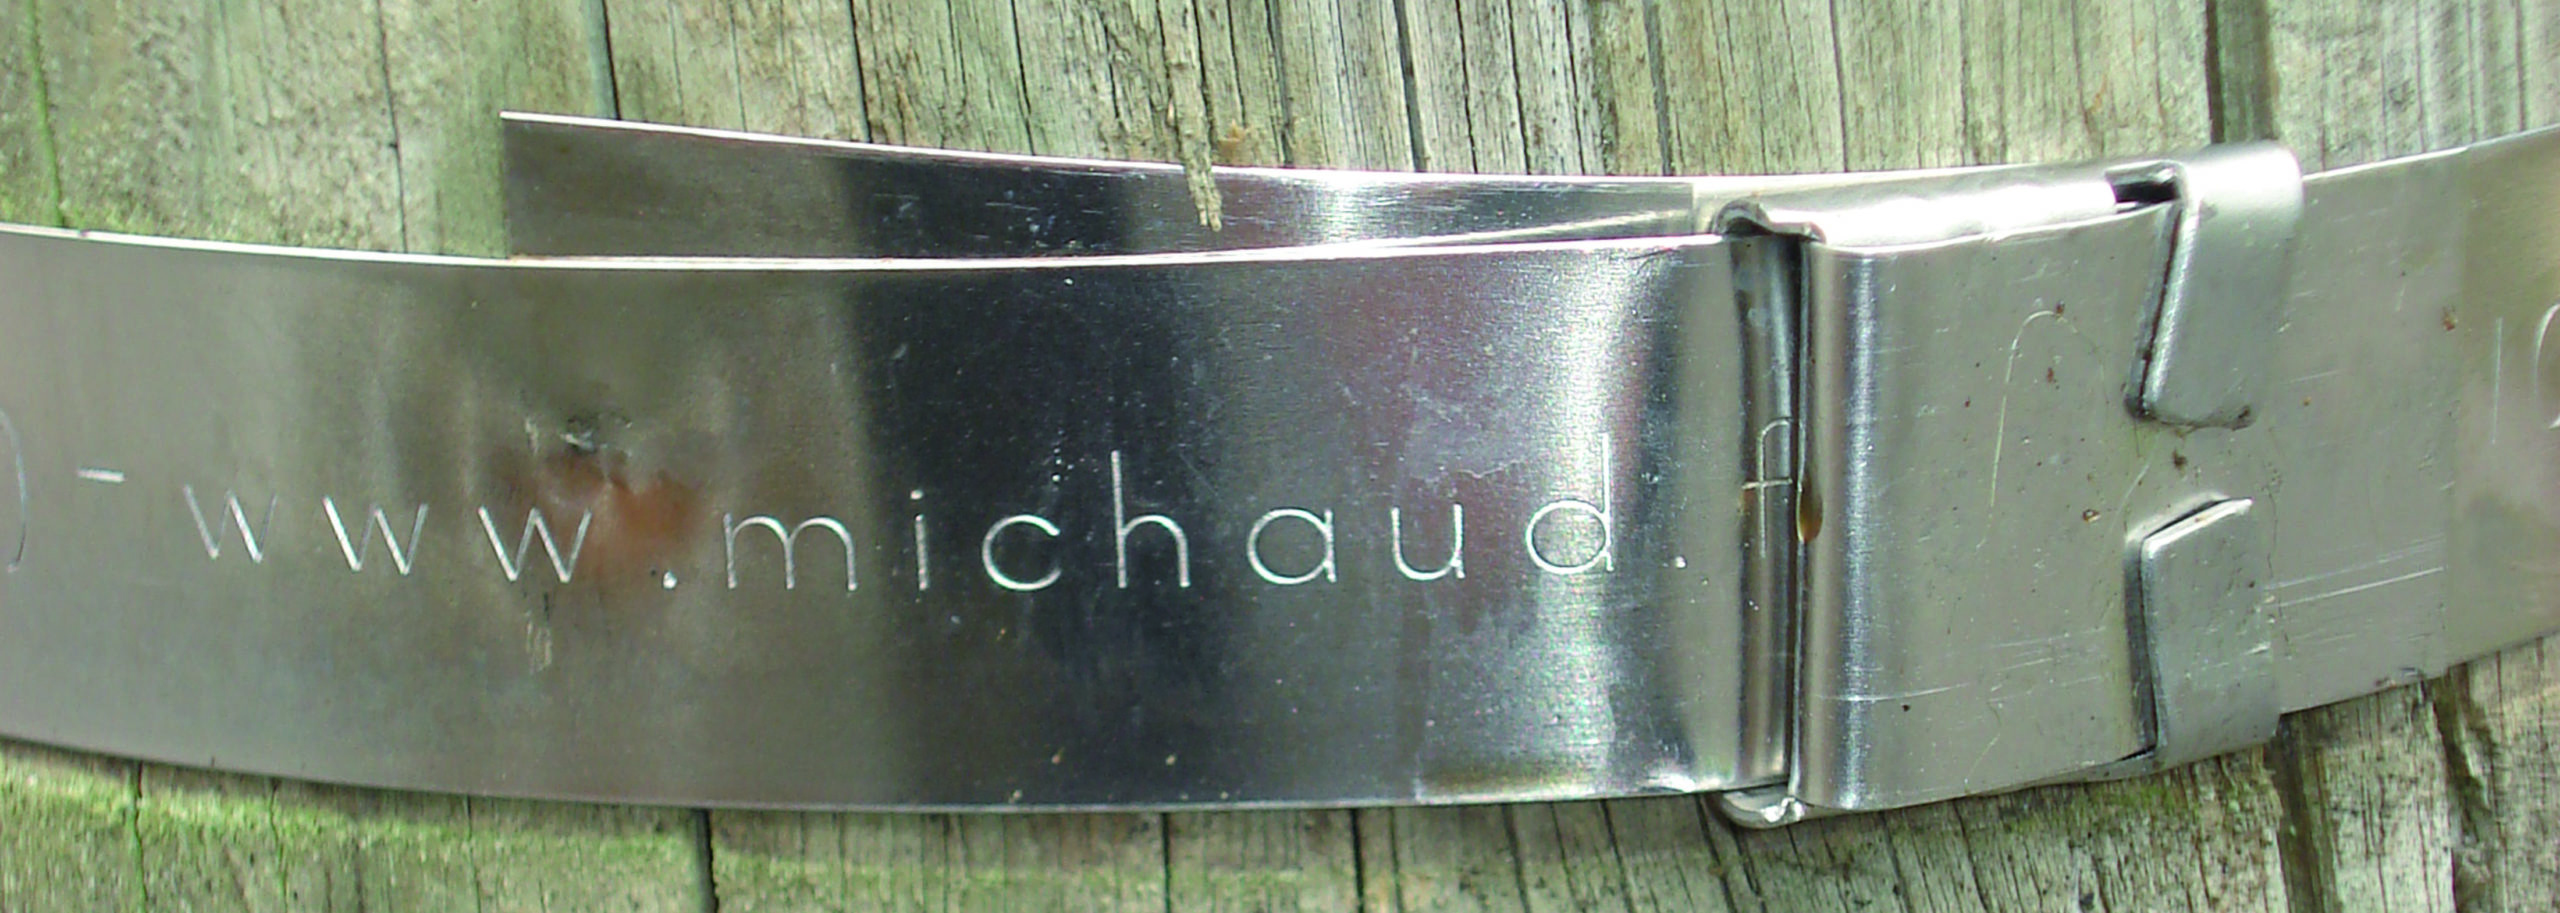 Feuillard de la marque MICHAUD installé sur un poteau électrique en bois.